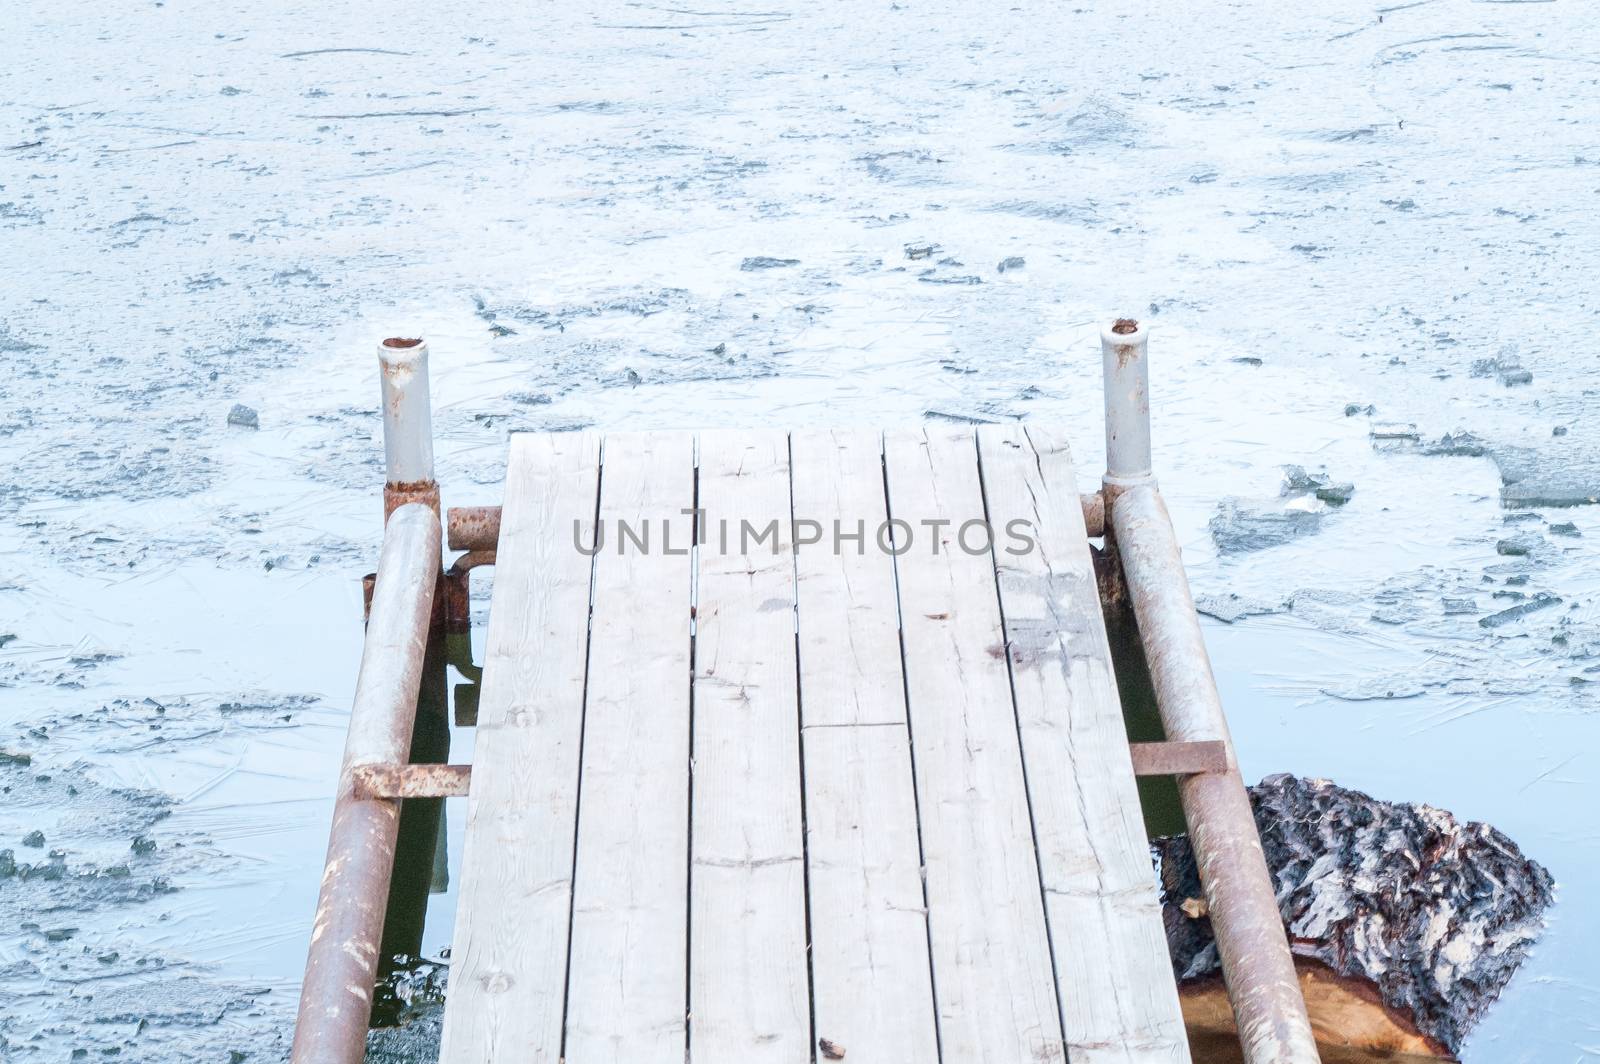 wooden pier, bridge of ice in the water